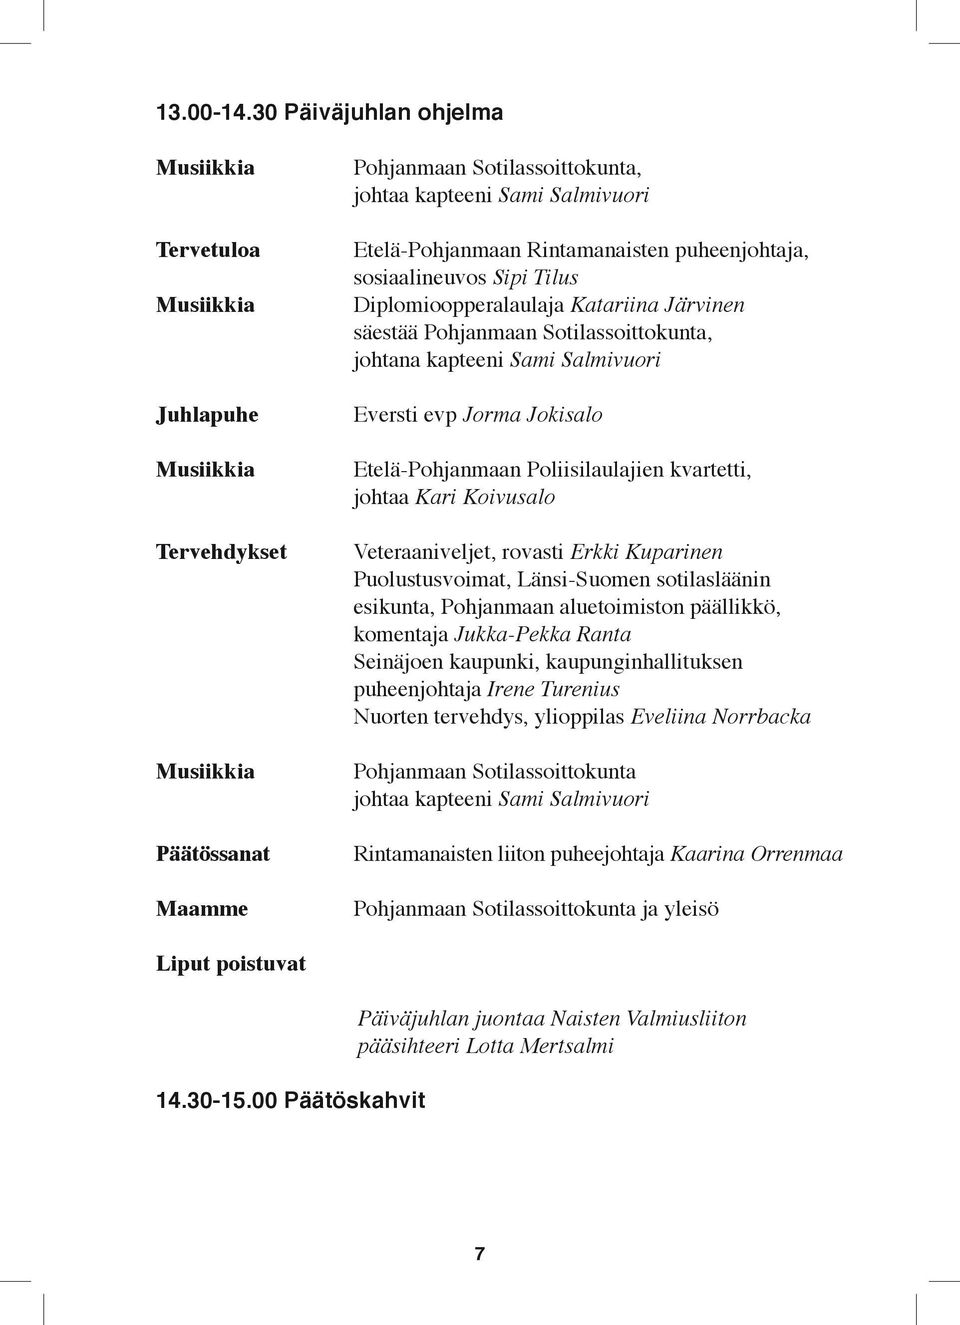 Jorma Jokisalo Etelä-Pohjanmaan Poliisilaulajien kvartetti, johtaa Kari Koivusalo Veteraaniveljet, rovasti Erkki Kuparinen Puolustusvoimat, Länsi-Suomen sotilasläänin esikunta, Pohjanmaan